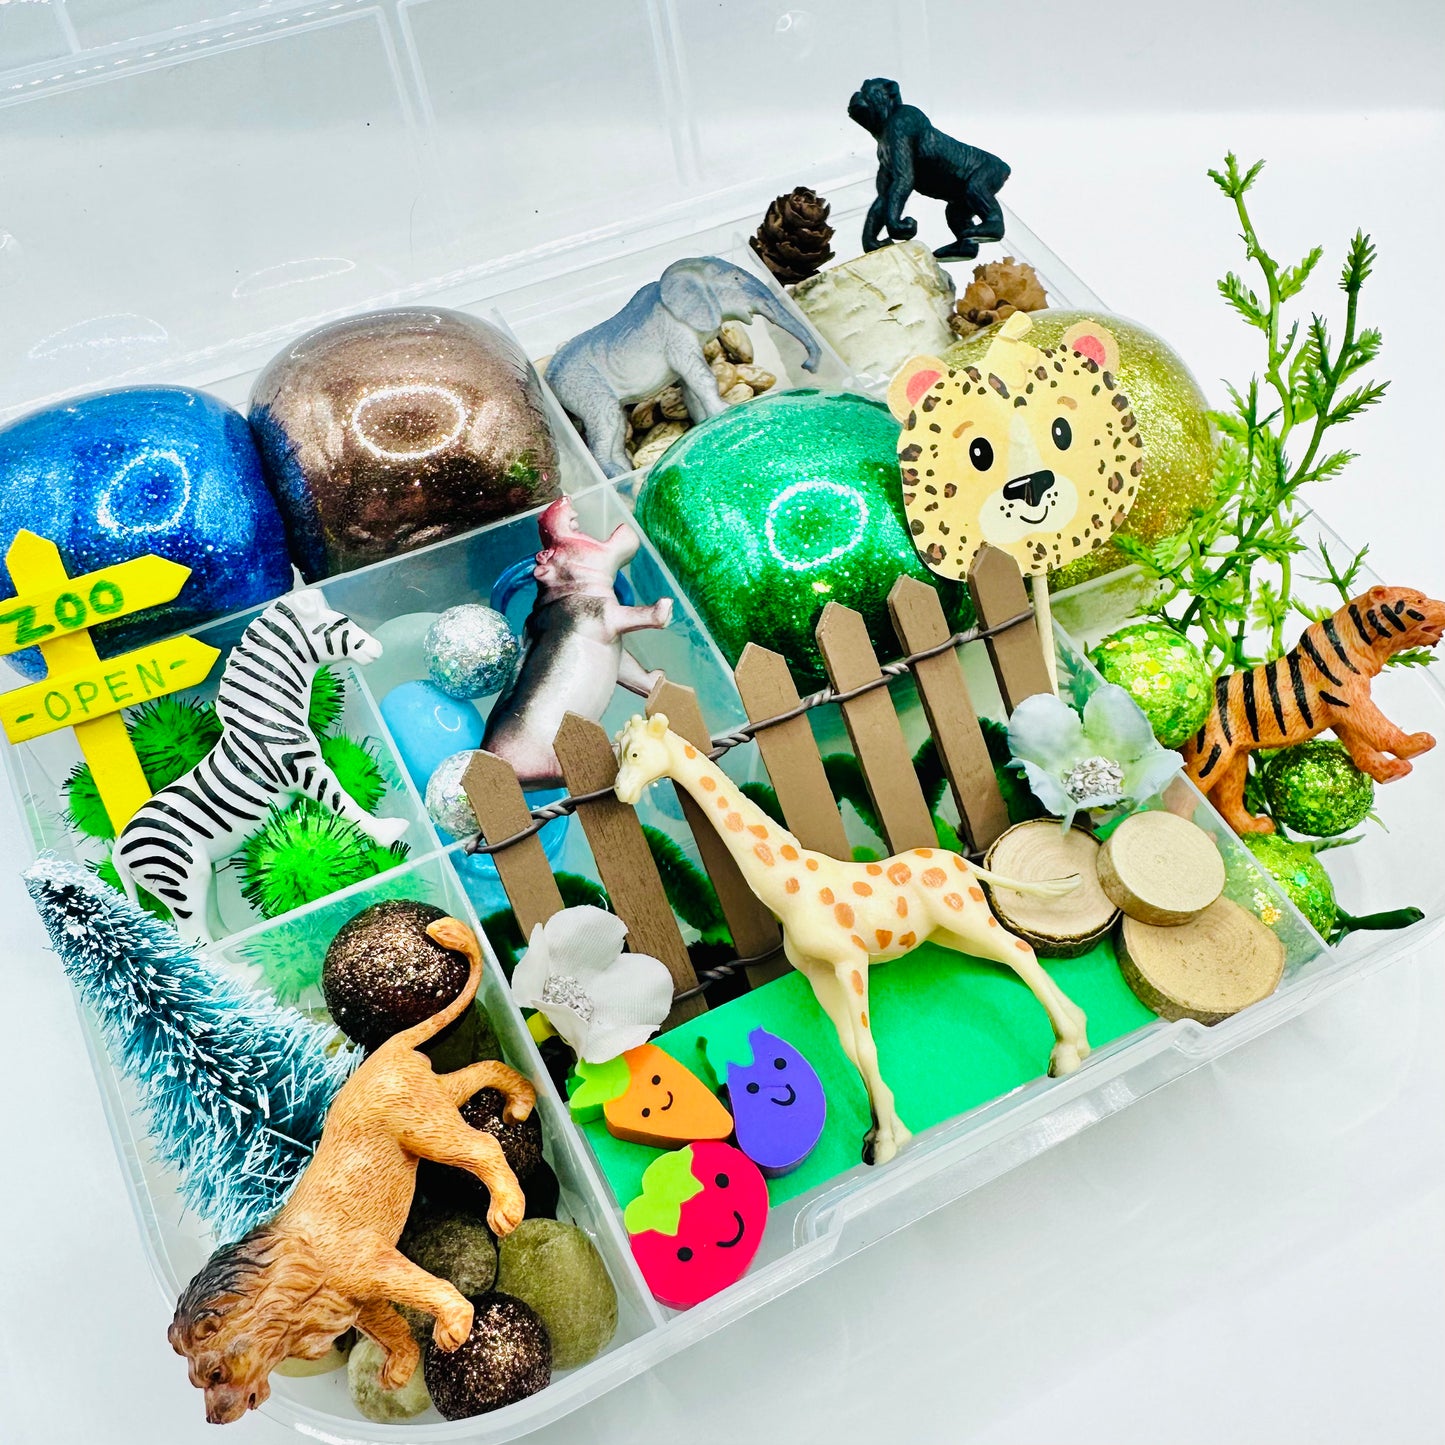 Zoo Playdough Sensory Kit Activity Toys Poppy and Pine Creations   